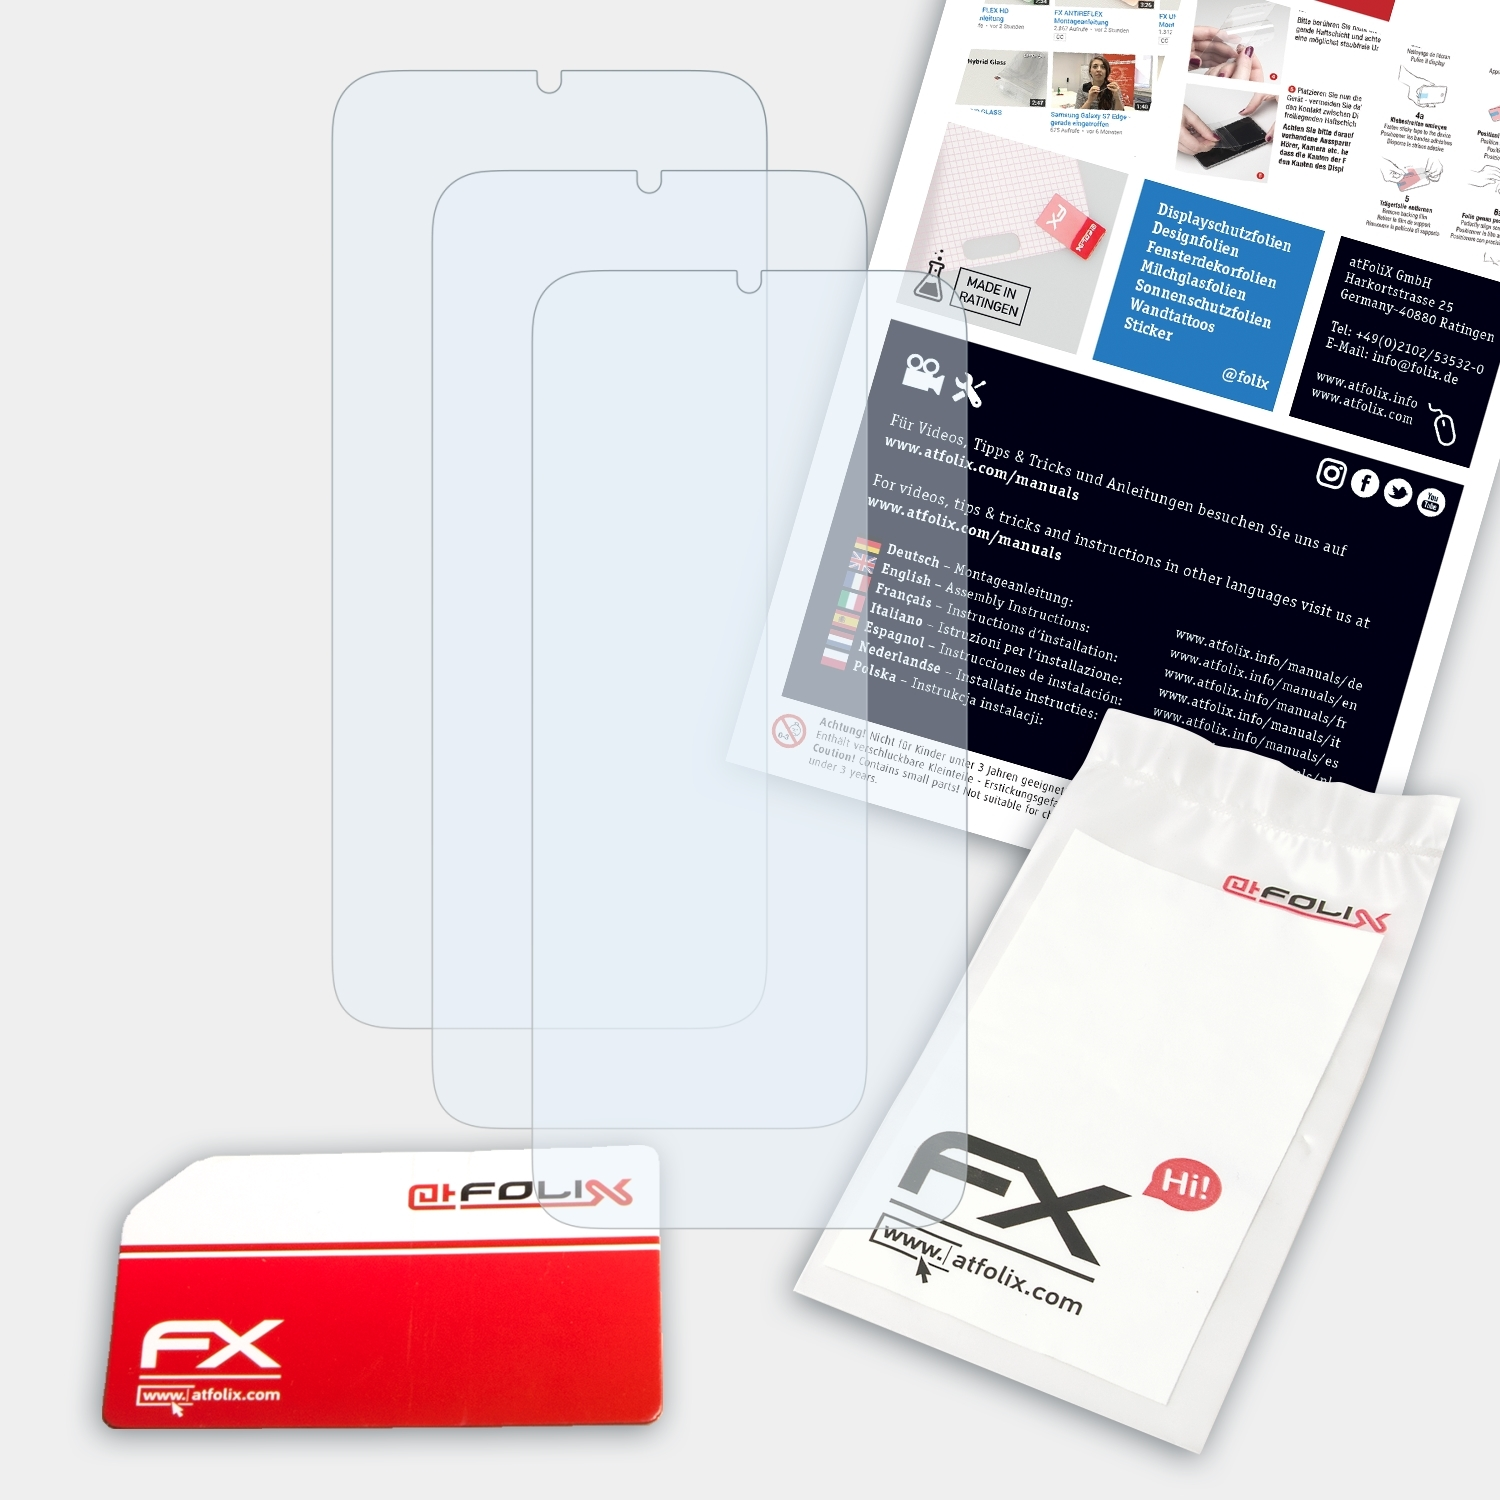 ATFOLIX 3x FX-Clear Displayschutz(für Neffos TP-Link C9s)